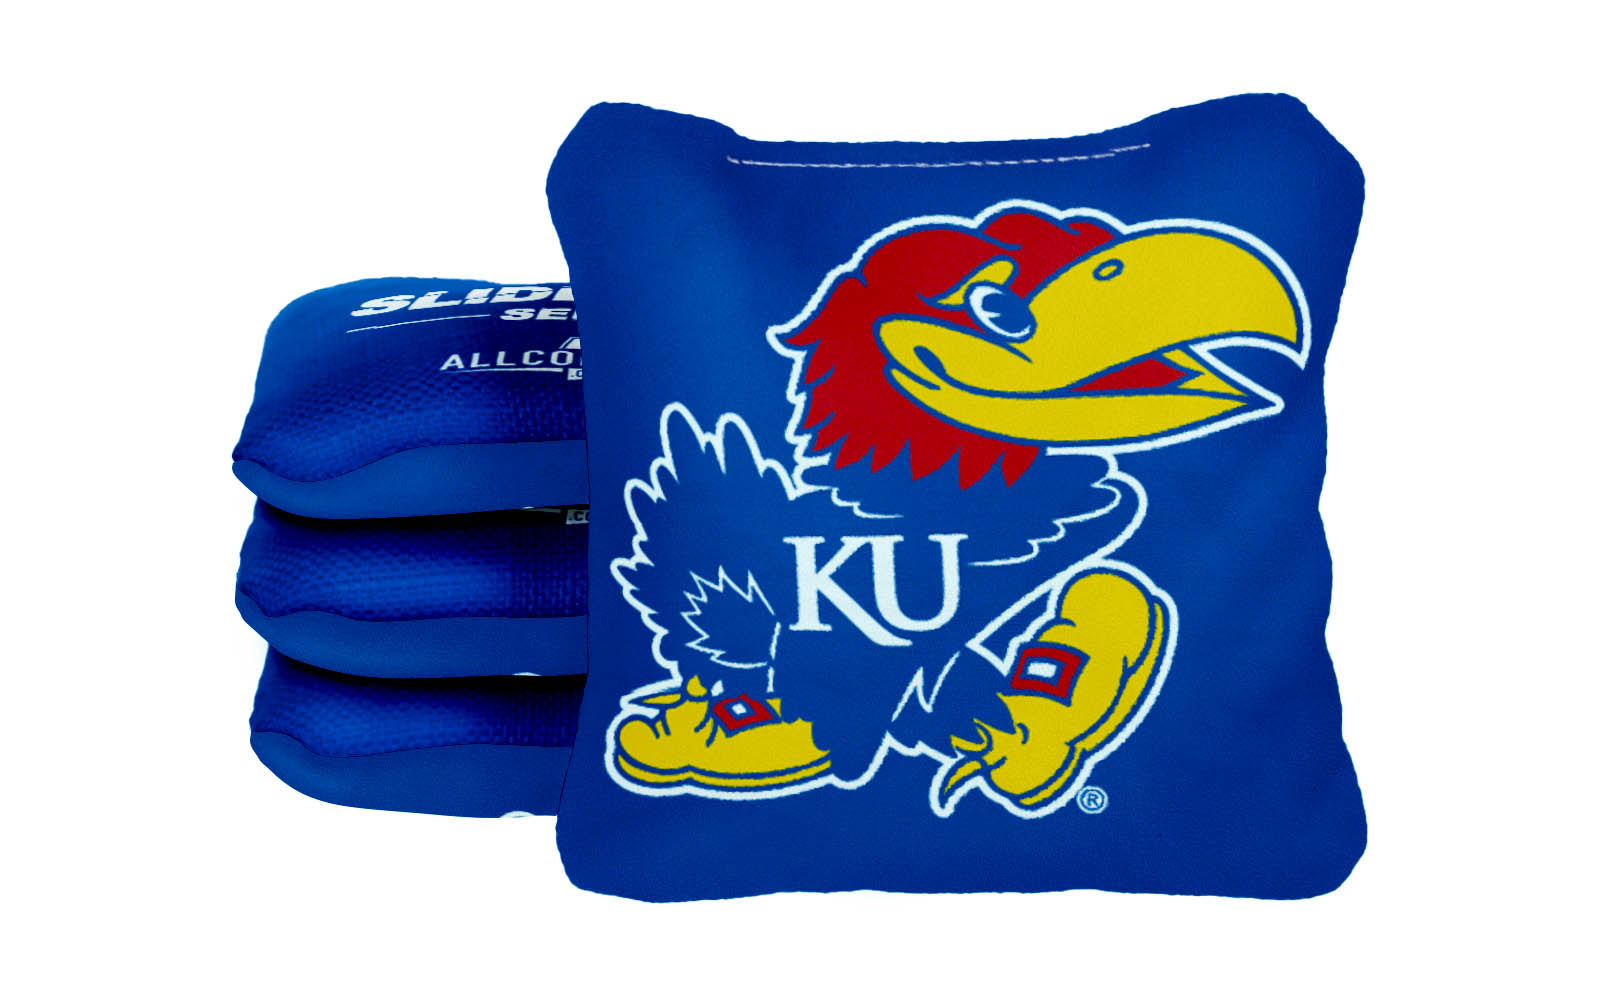 Officially Licensed Collegiate Cornhole Bags - AllCornhole Slide Rite - Set of 4 - University of Kansas